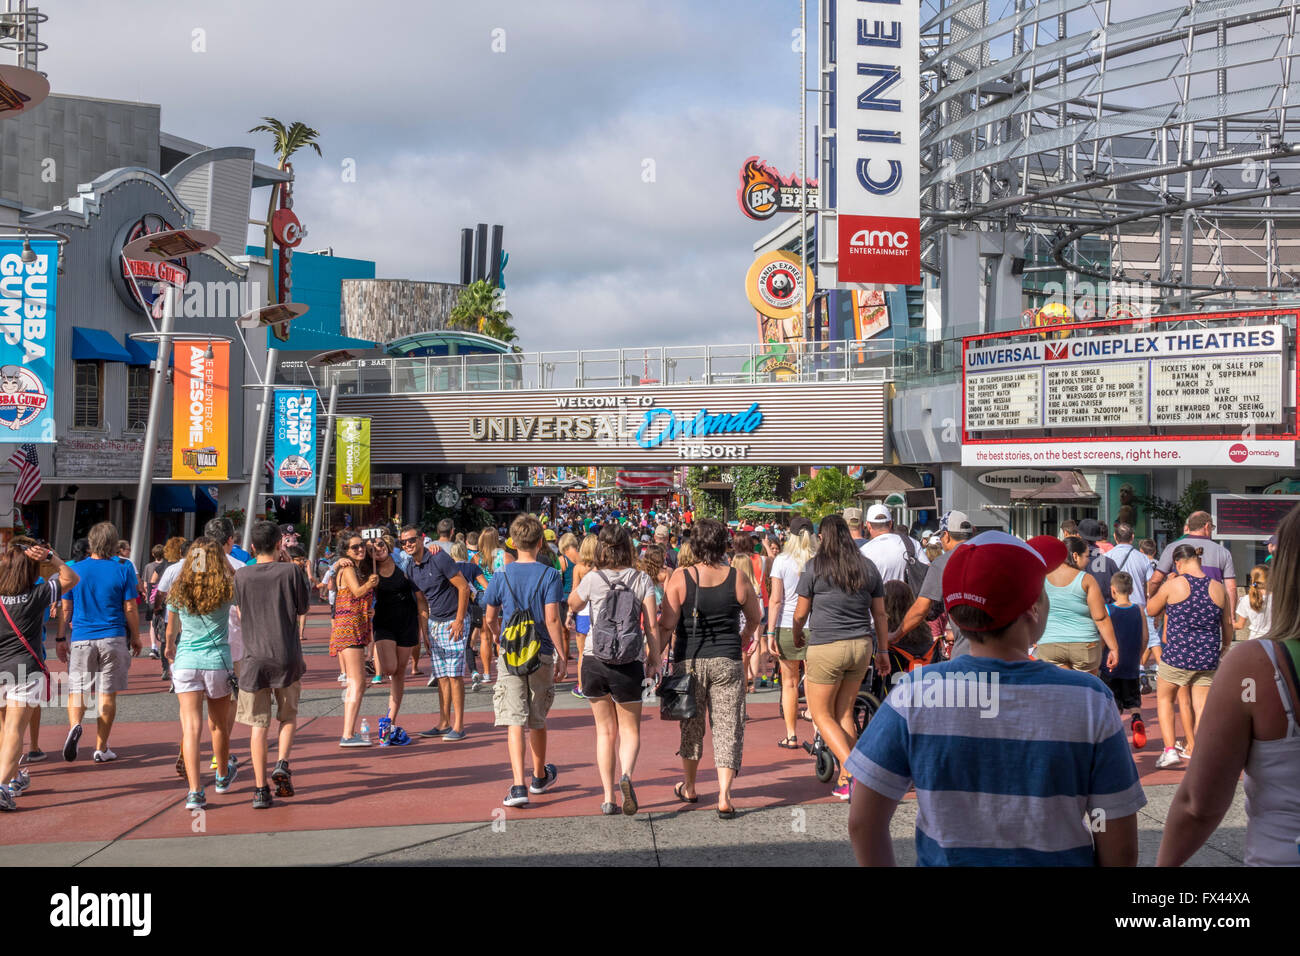 Geschäfte und Restaurants im Universal Studios City Walk Orlando Florida Stockfoto